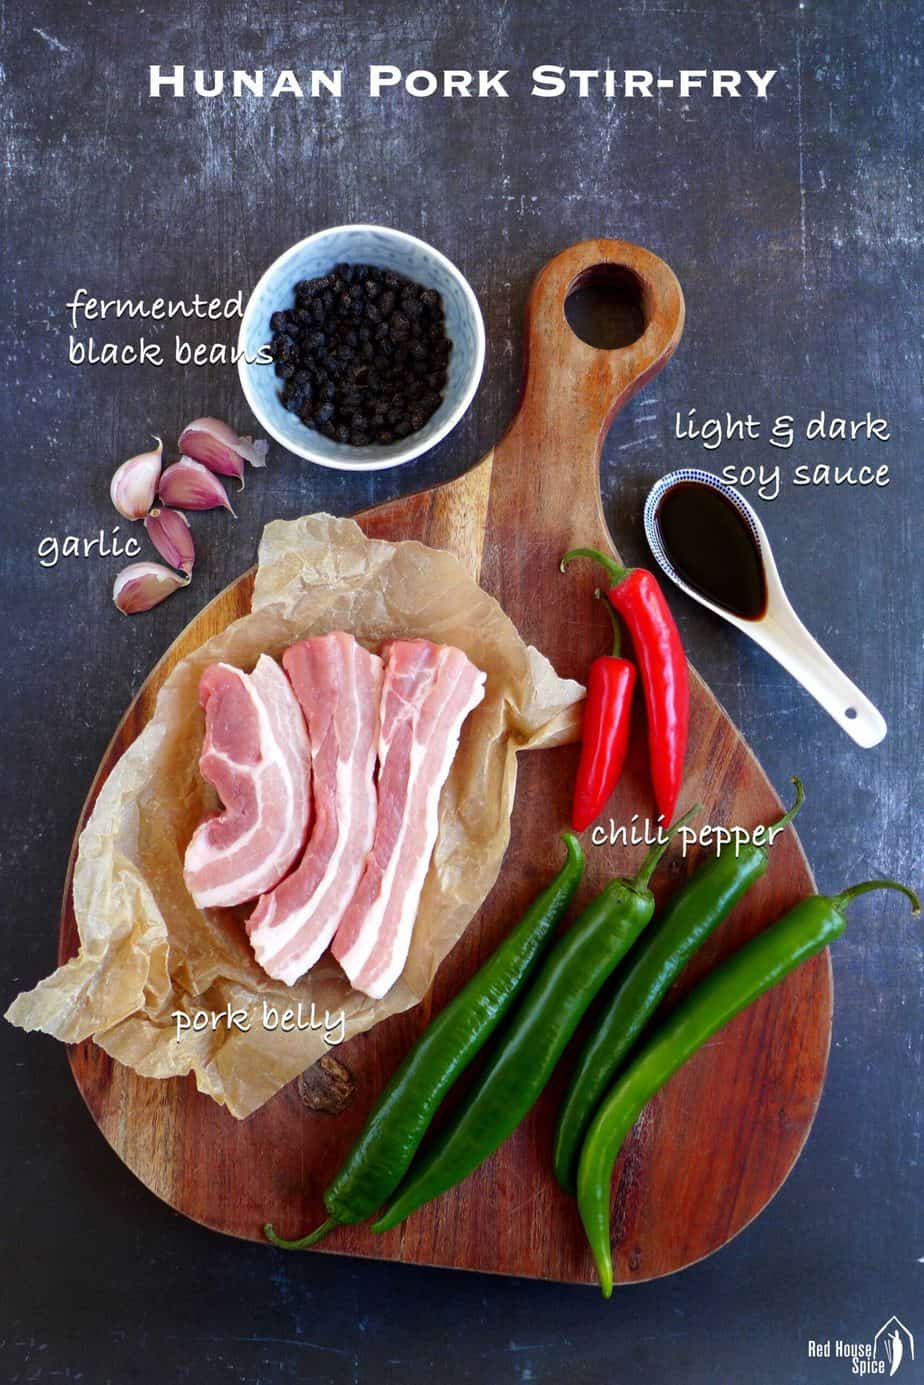 Ingredients for Hunan pork